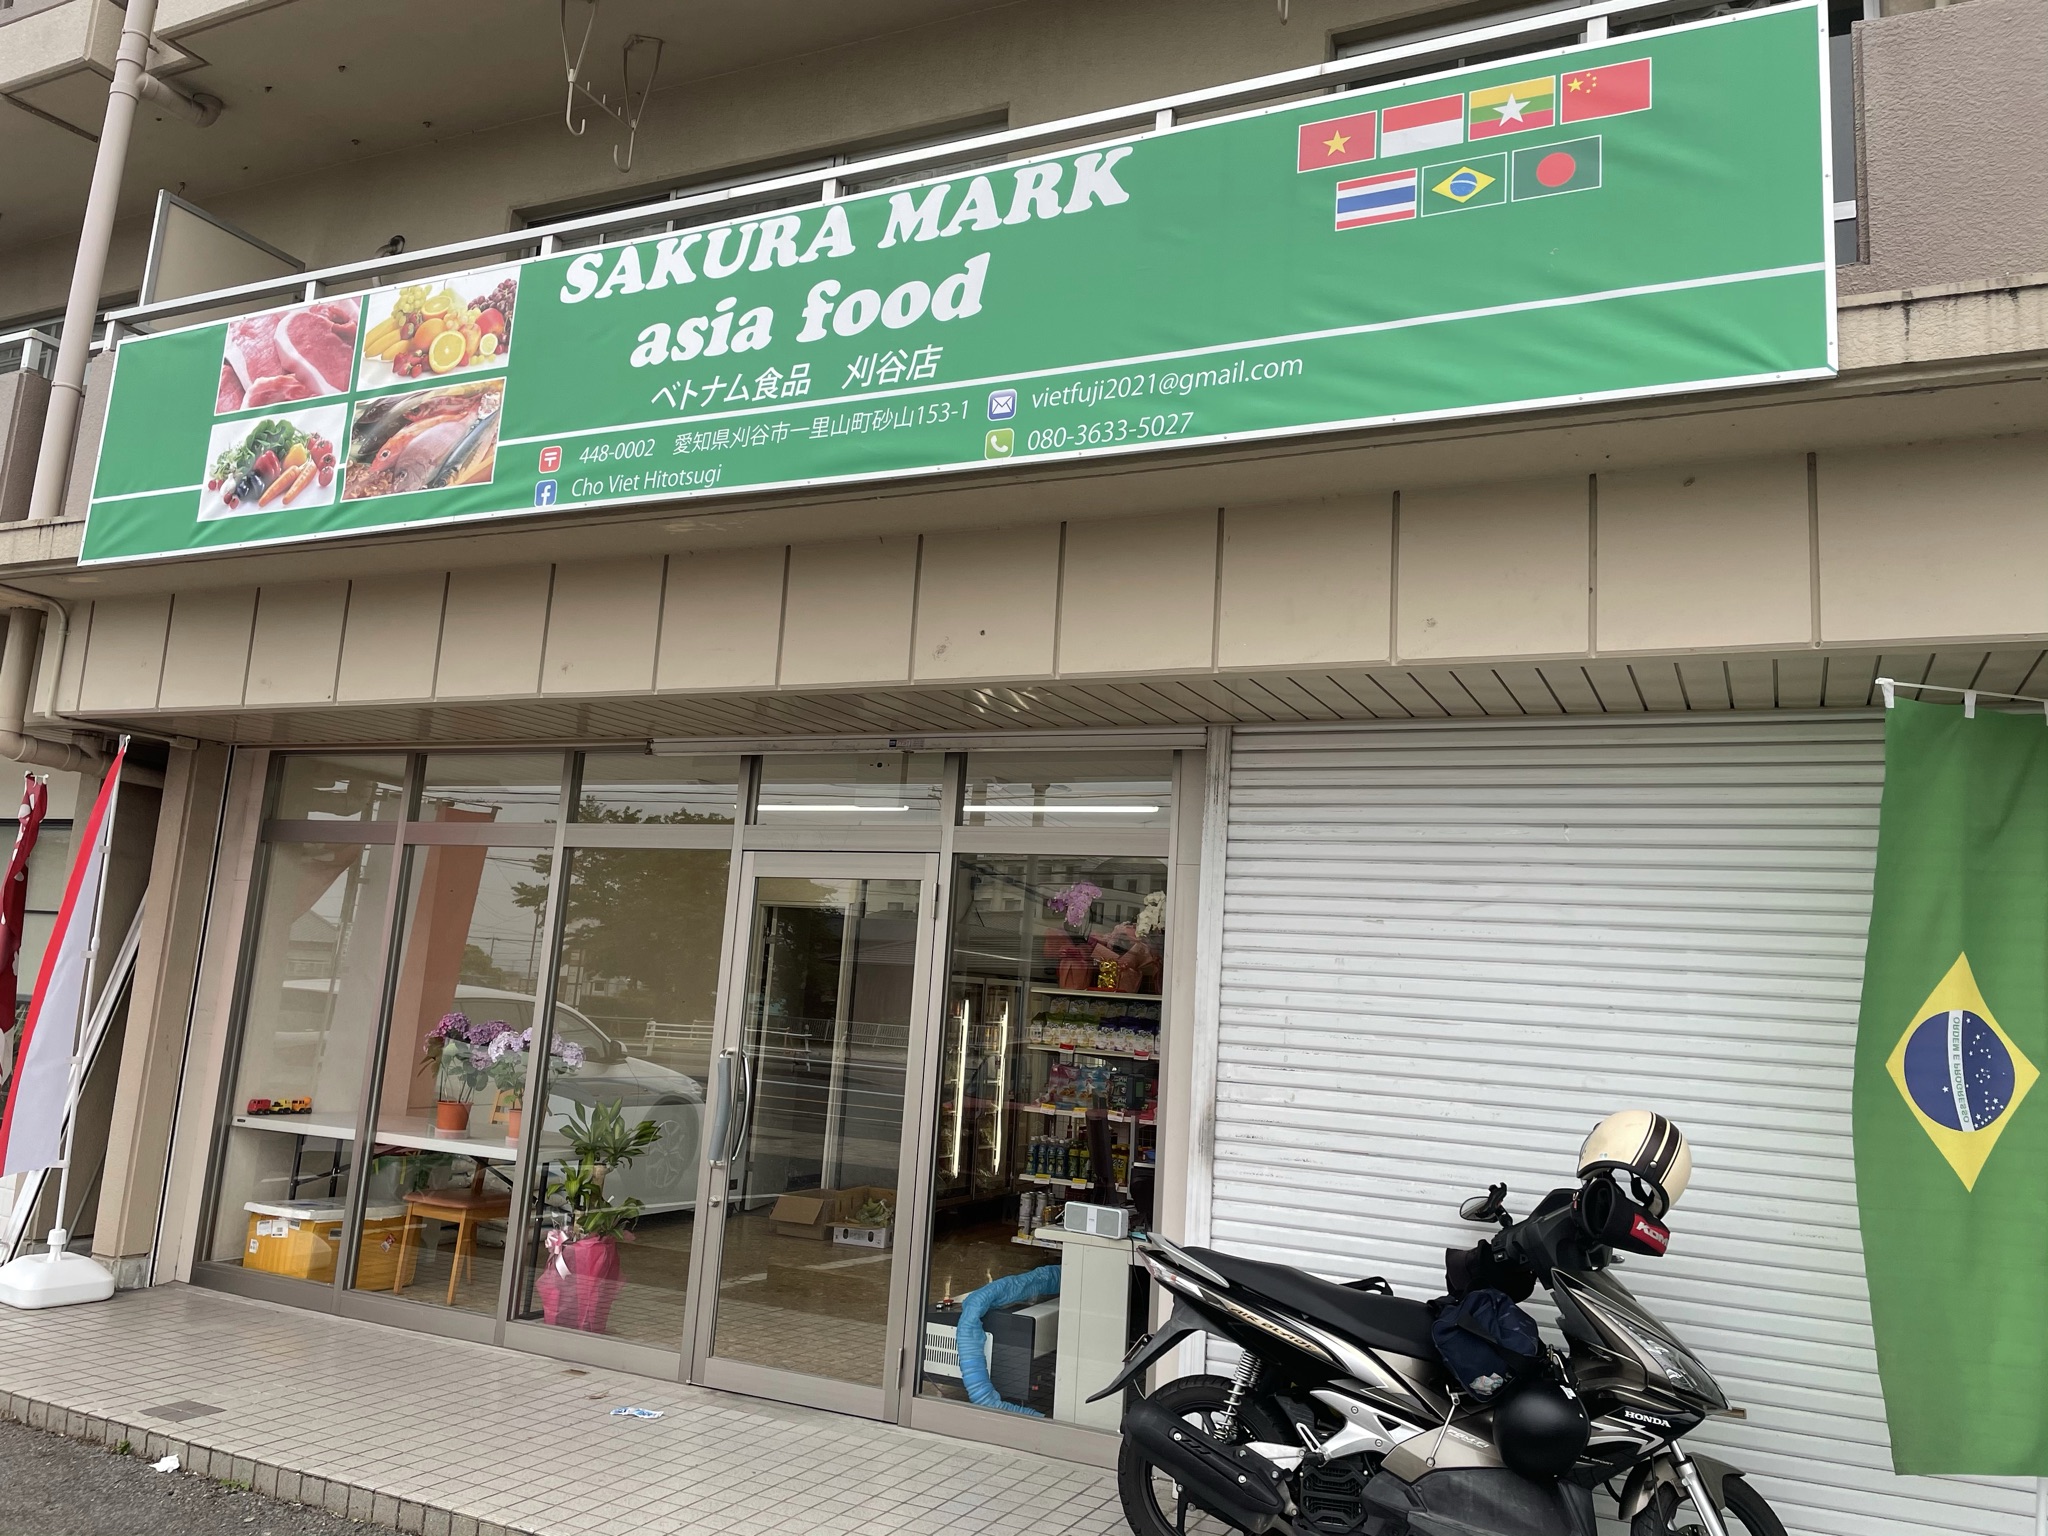 【愛知県刈谷市】トヨタ車体のそばにOPEN！ベトナム食材店「SAKURA MARK asia food」